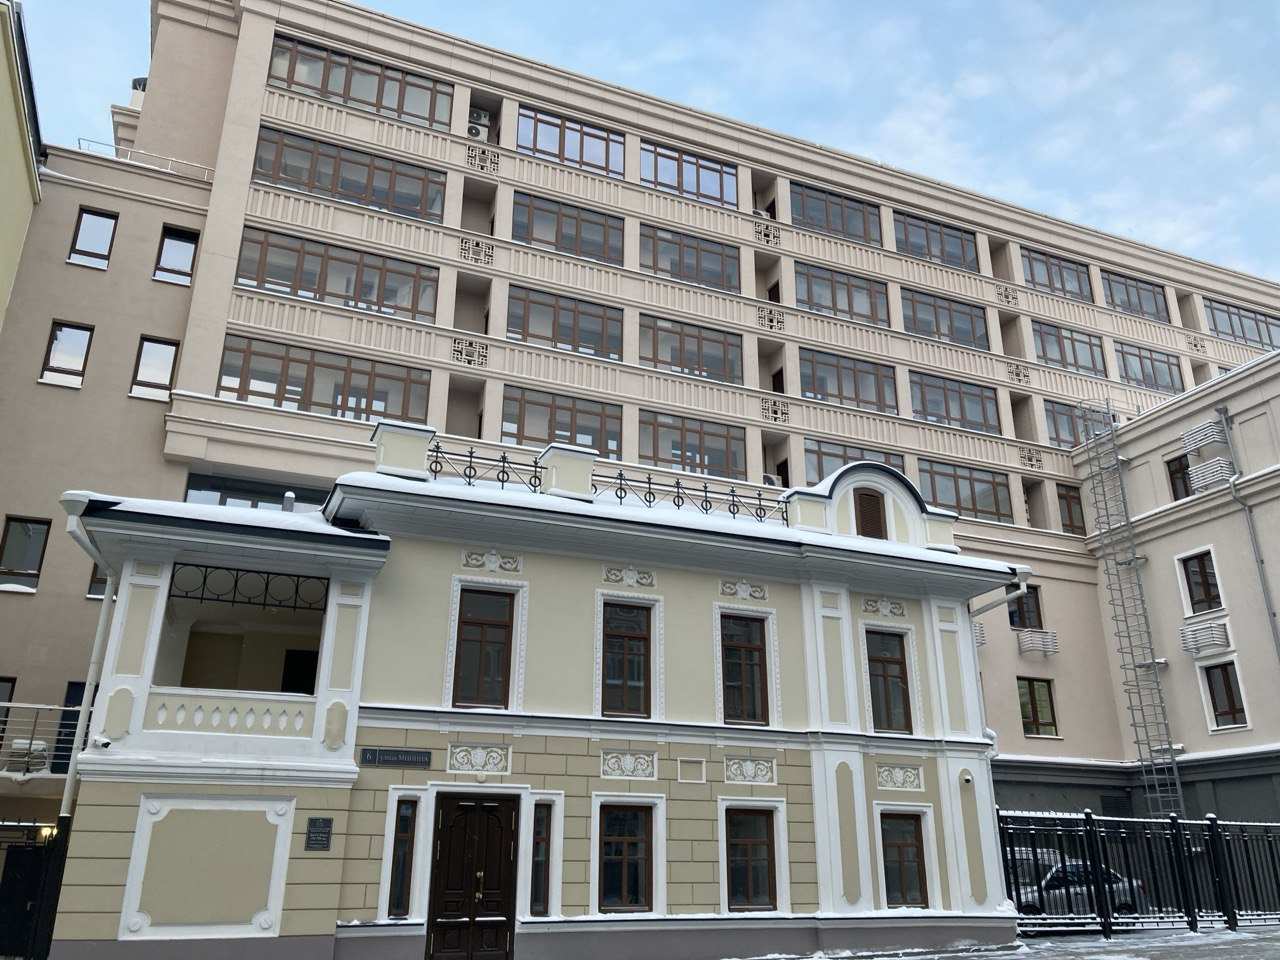 Отреставрированный Дом Фомина продают за 86,6 млн рублей в Нижнем Новгороде - фото 1